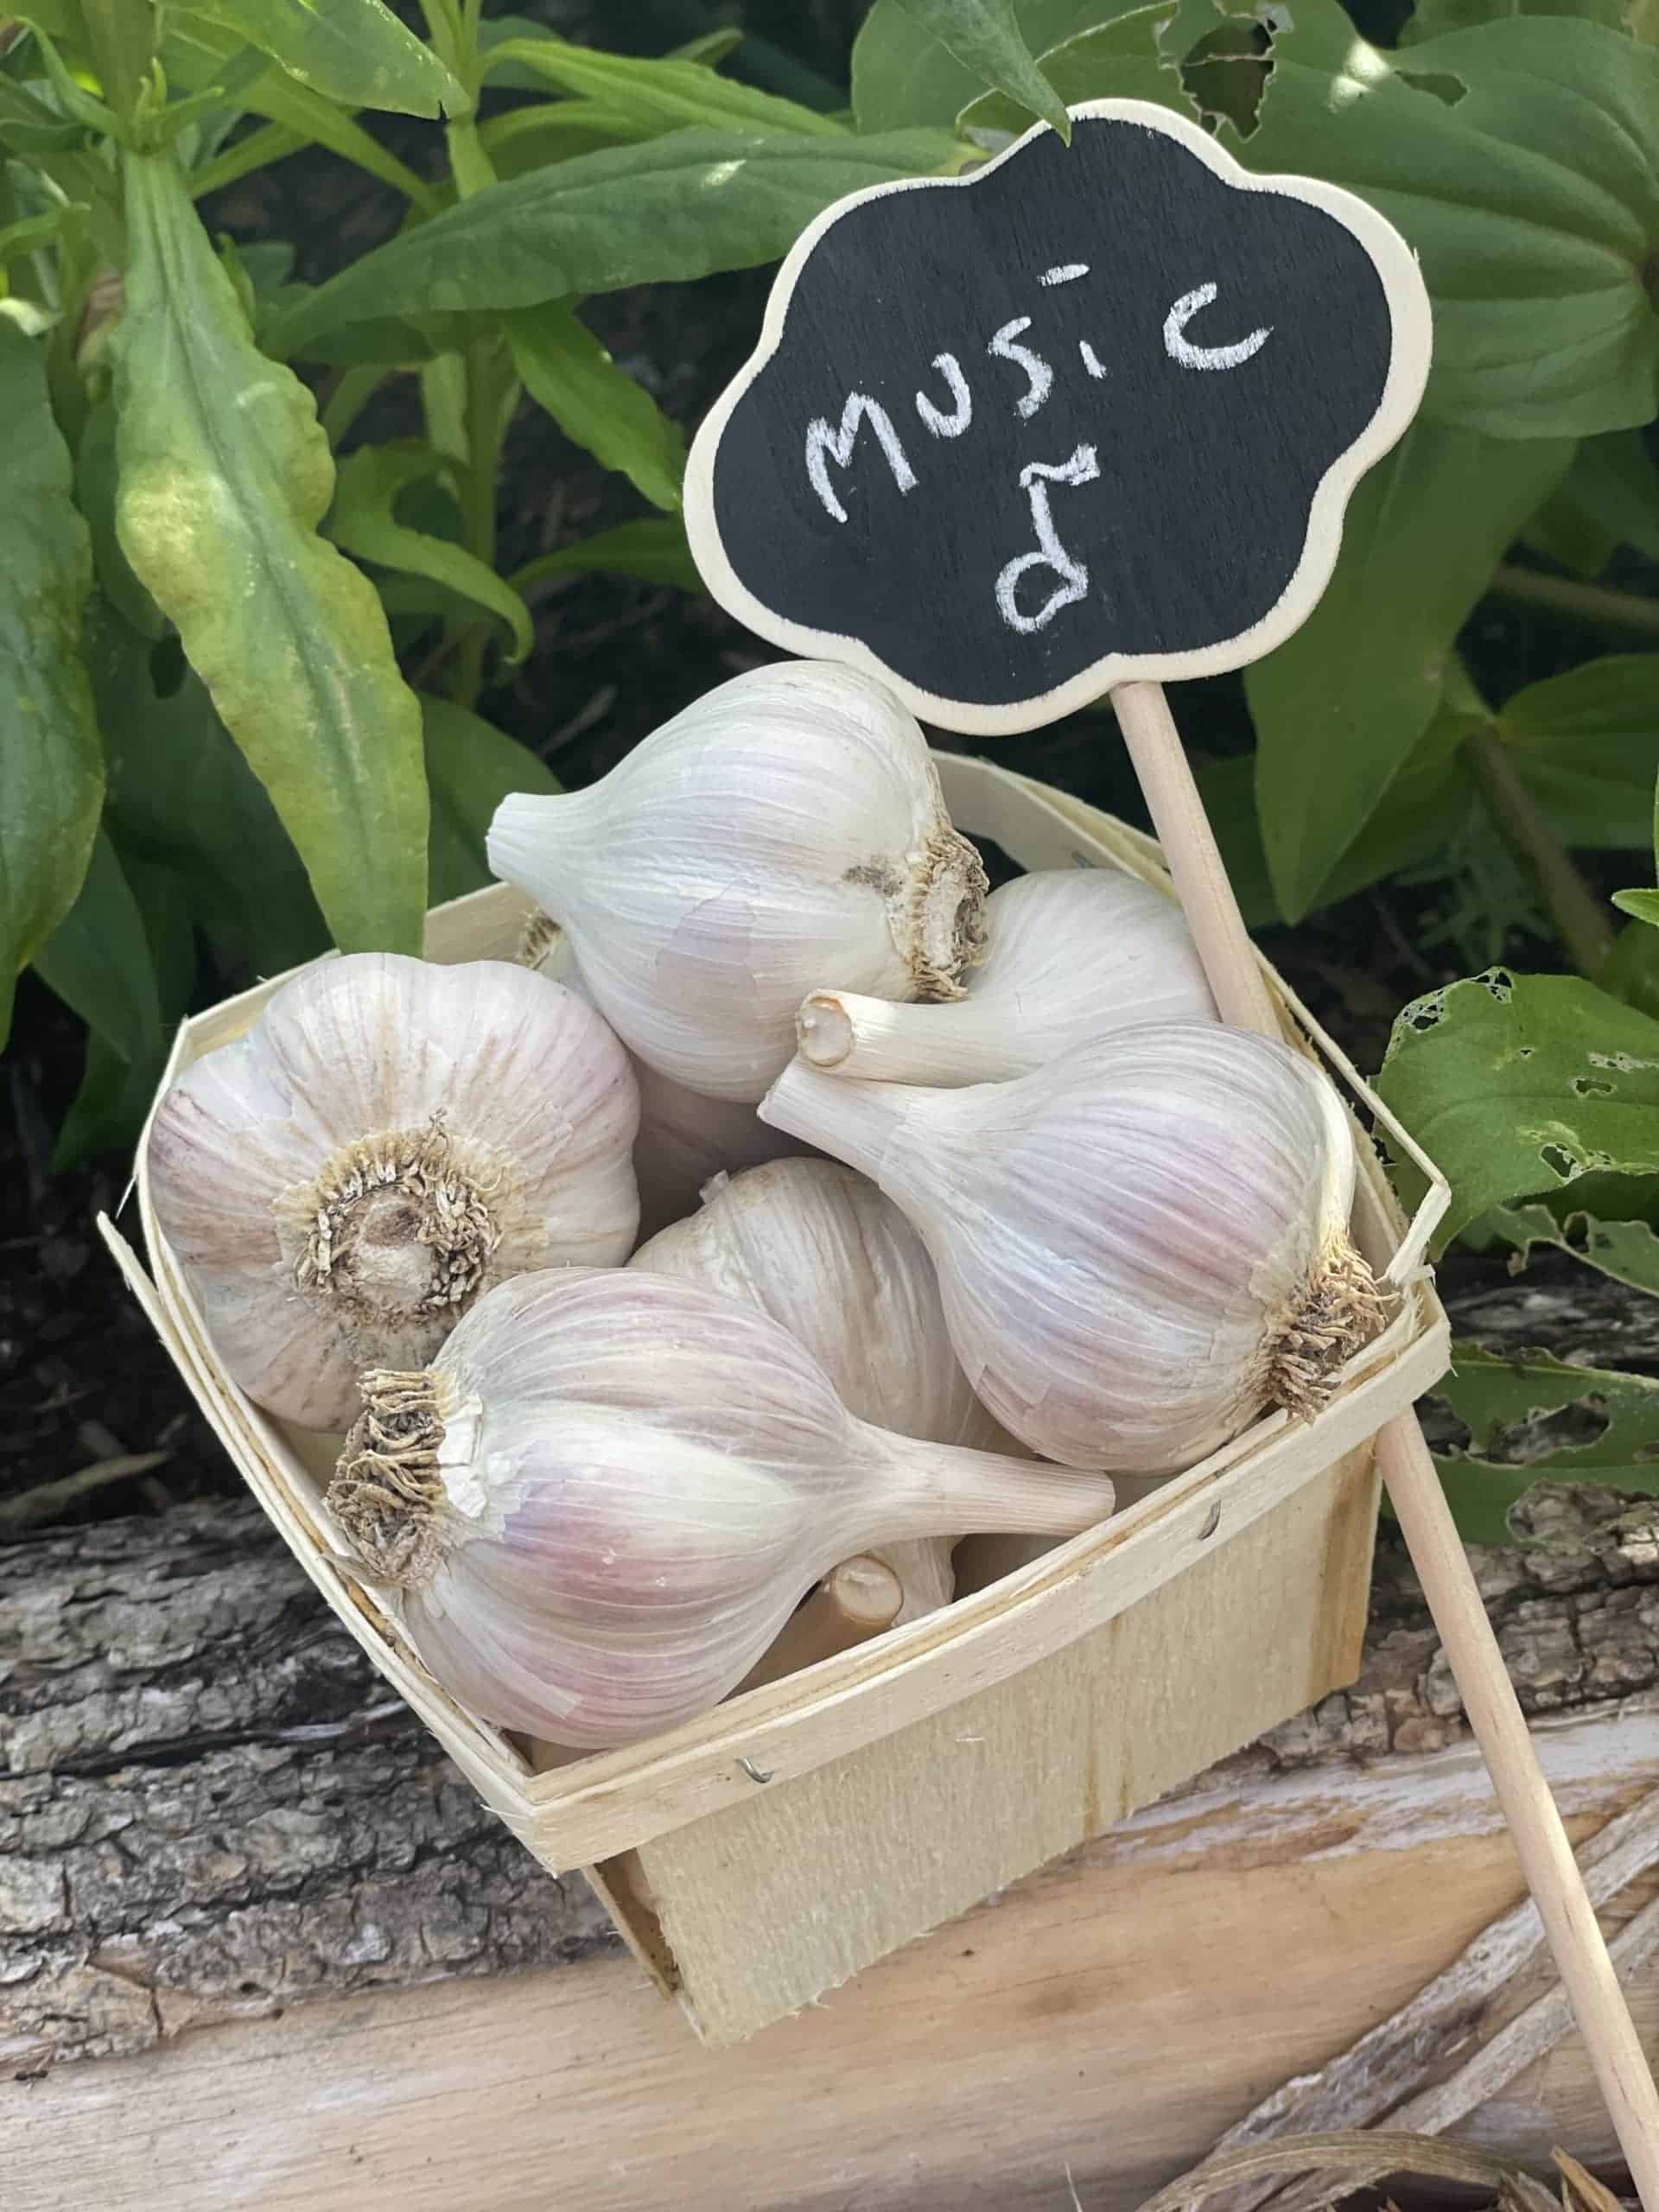 Music garlic - 1lb